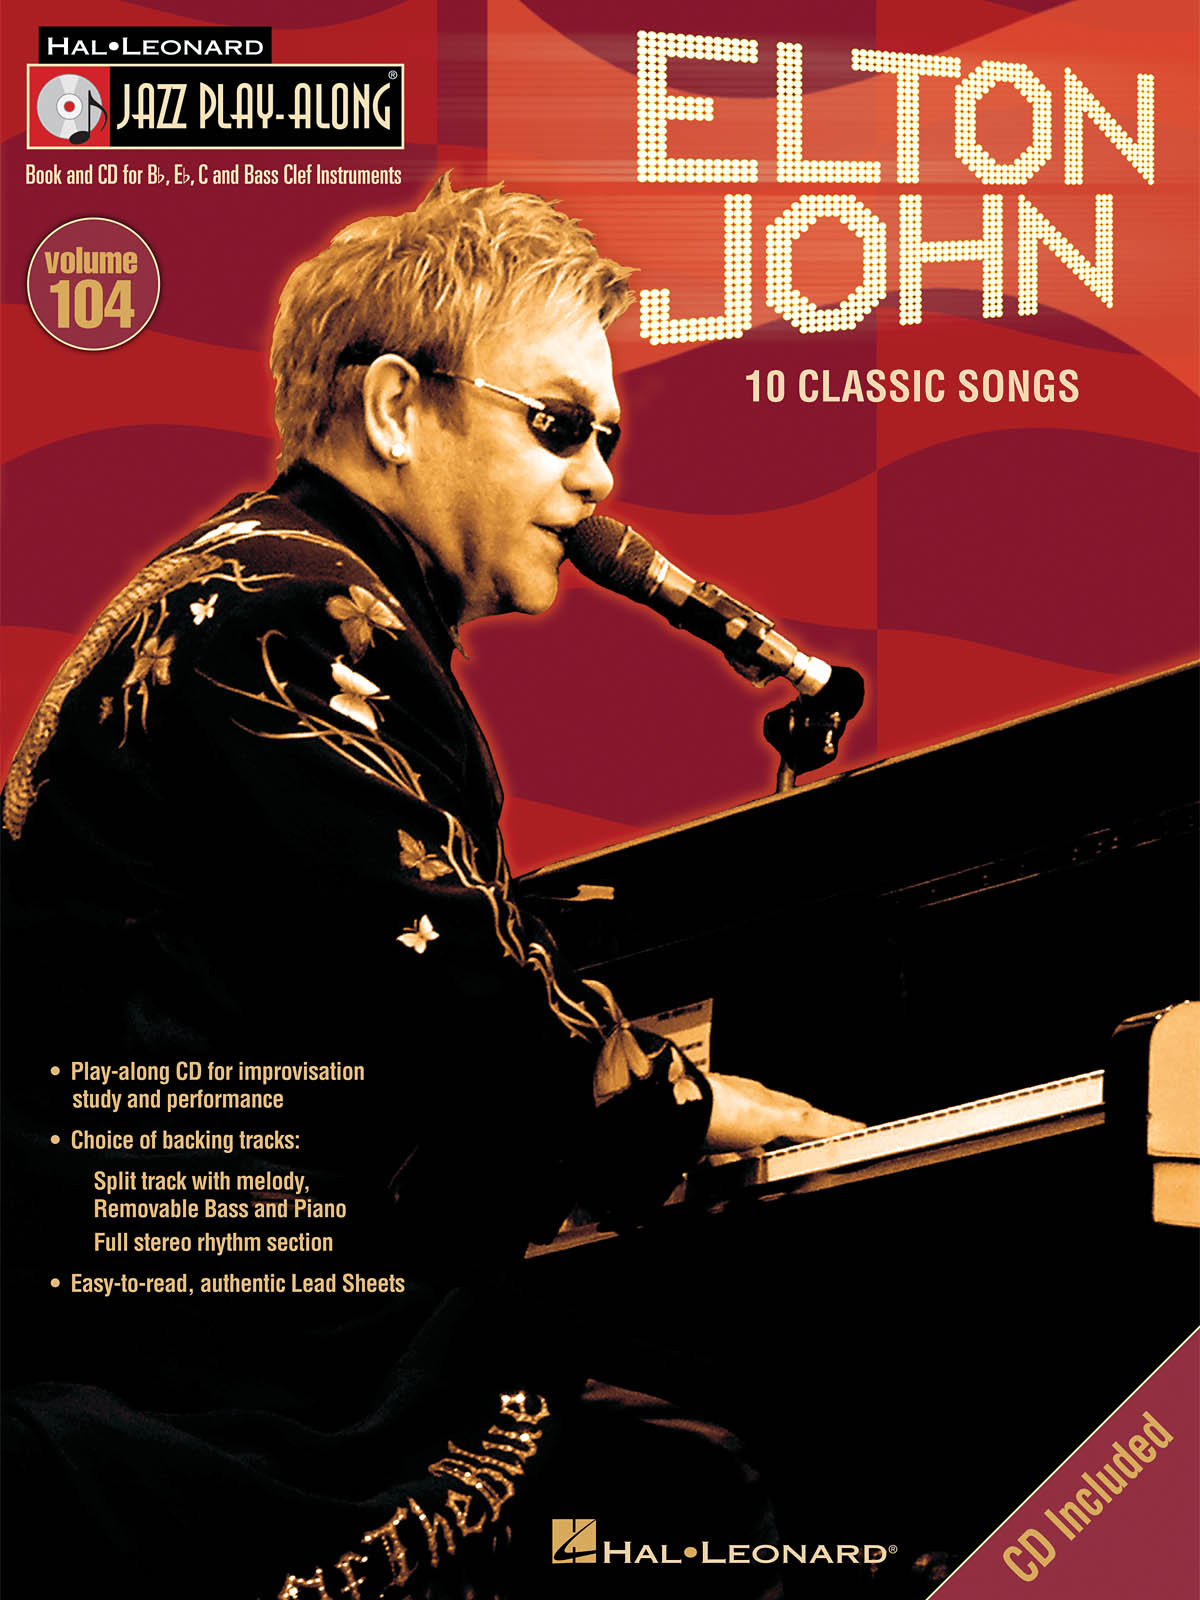 Elton John - Jazz Play-Along Volume 104 - melodie s akordy pro nástroje v ladění C